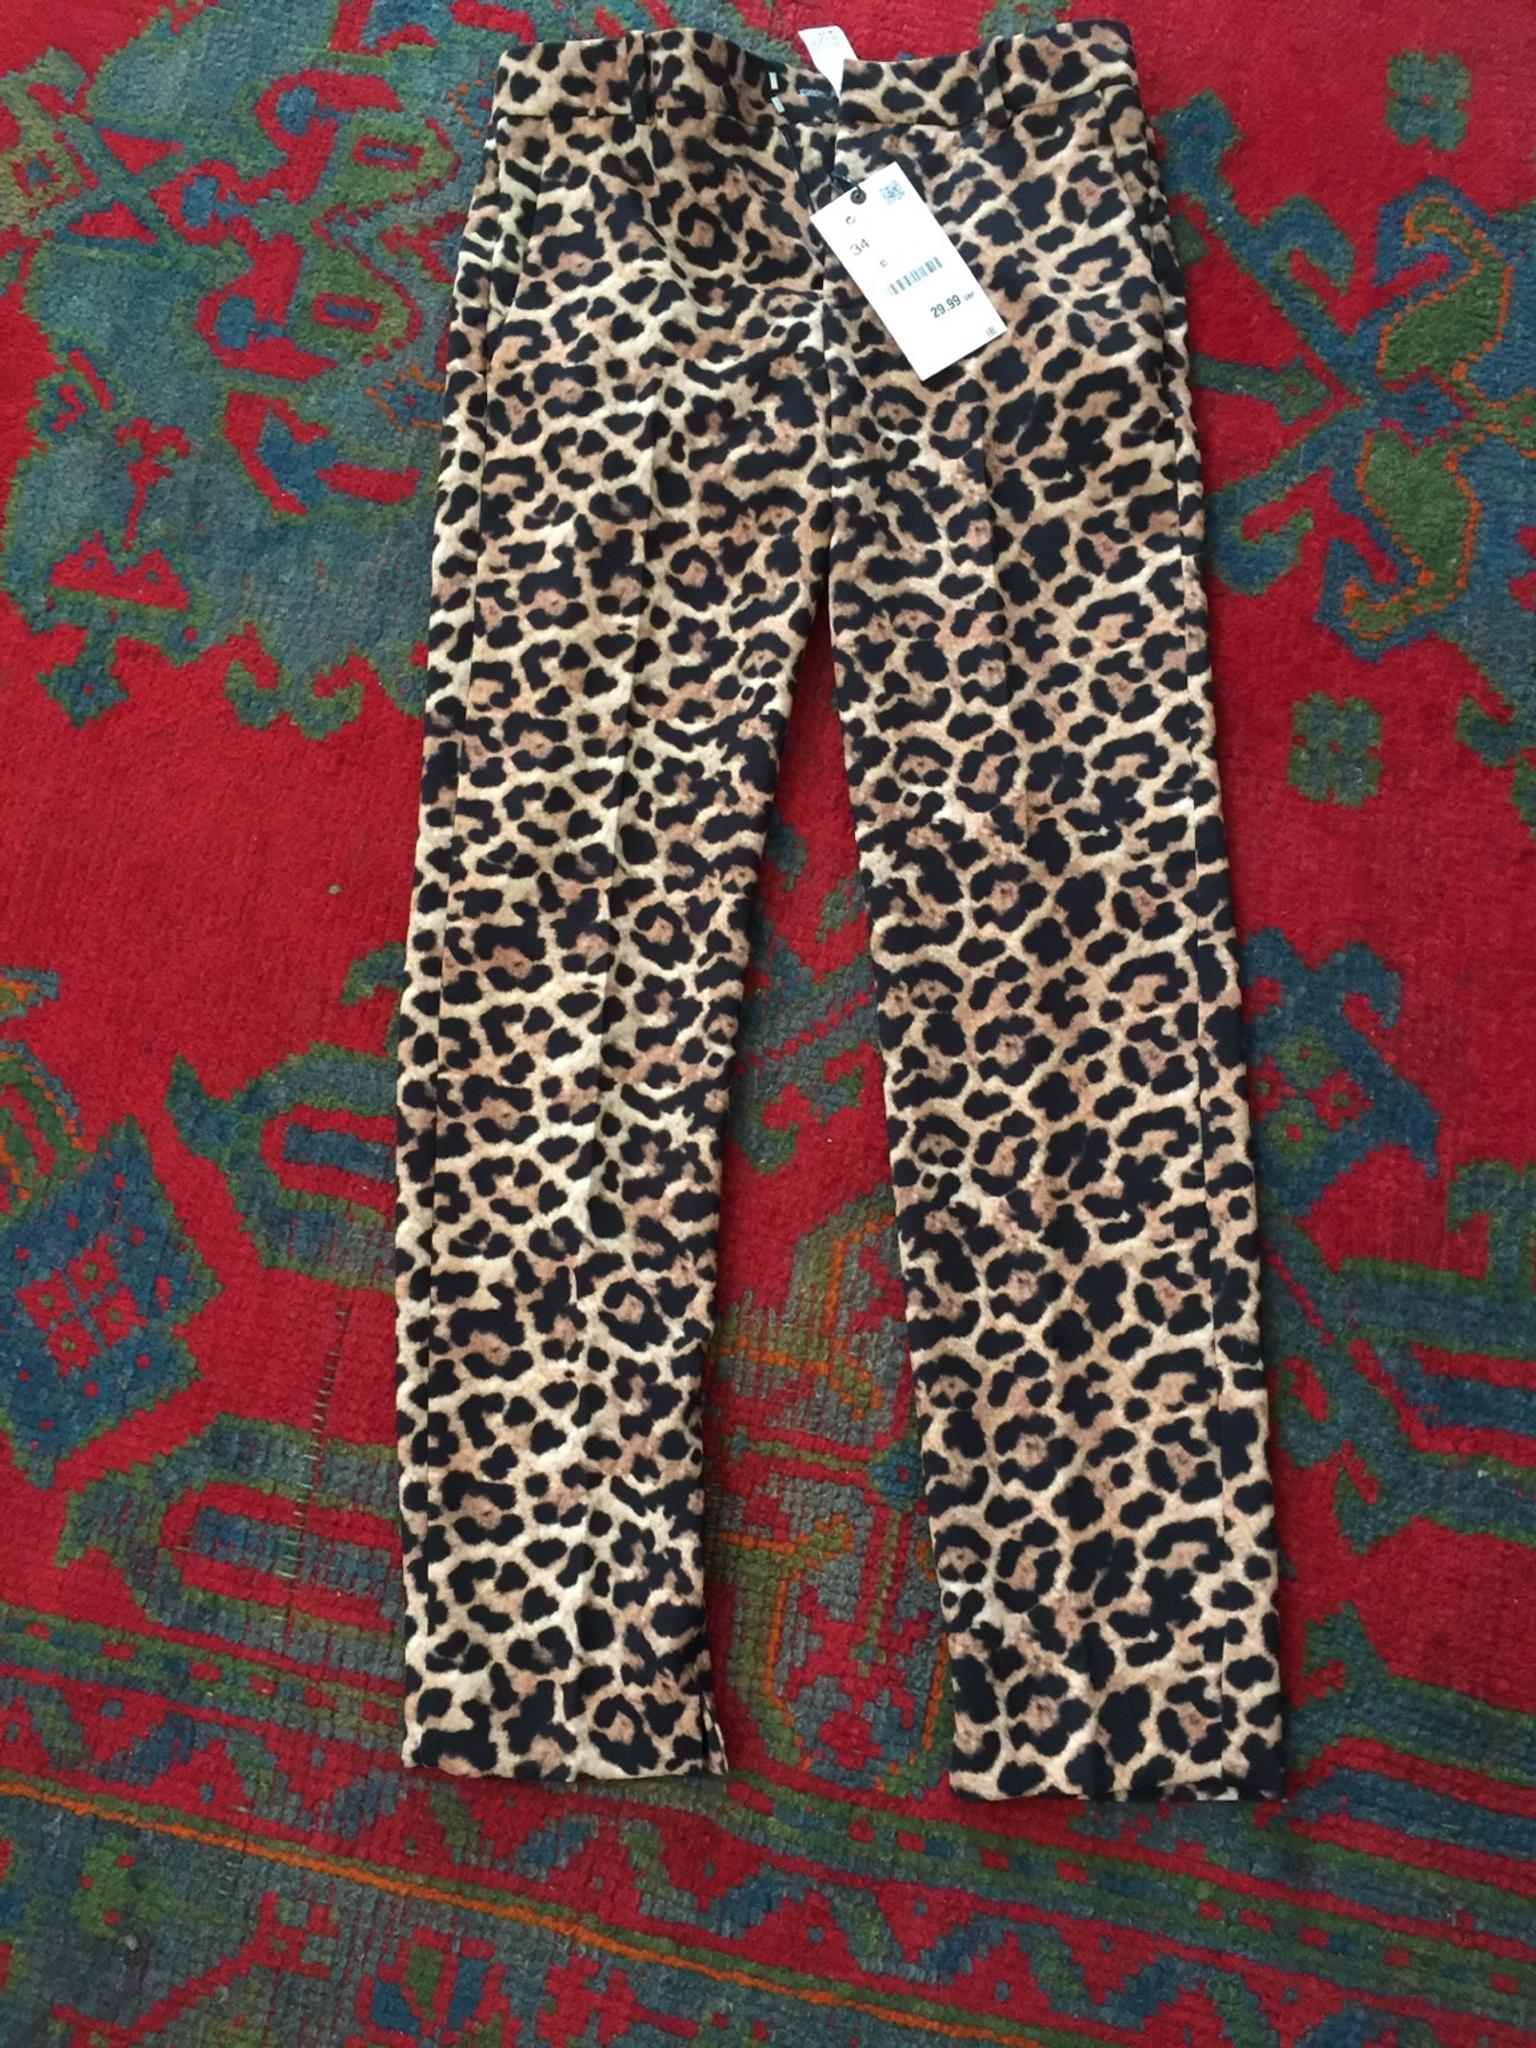 zara leopard trousers